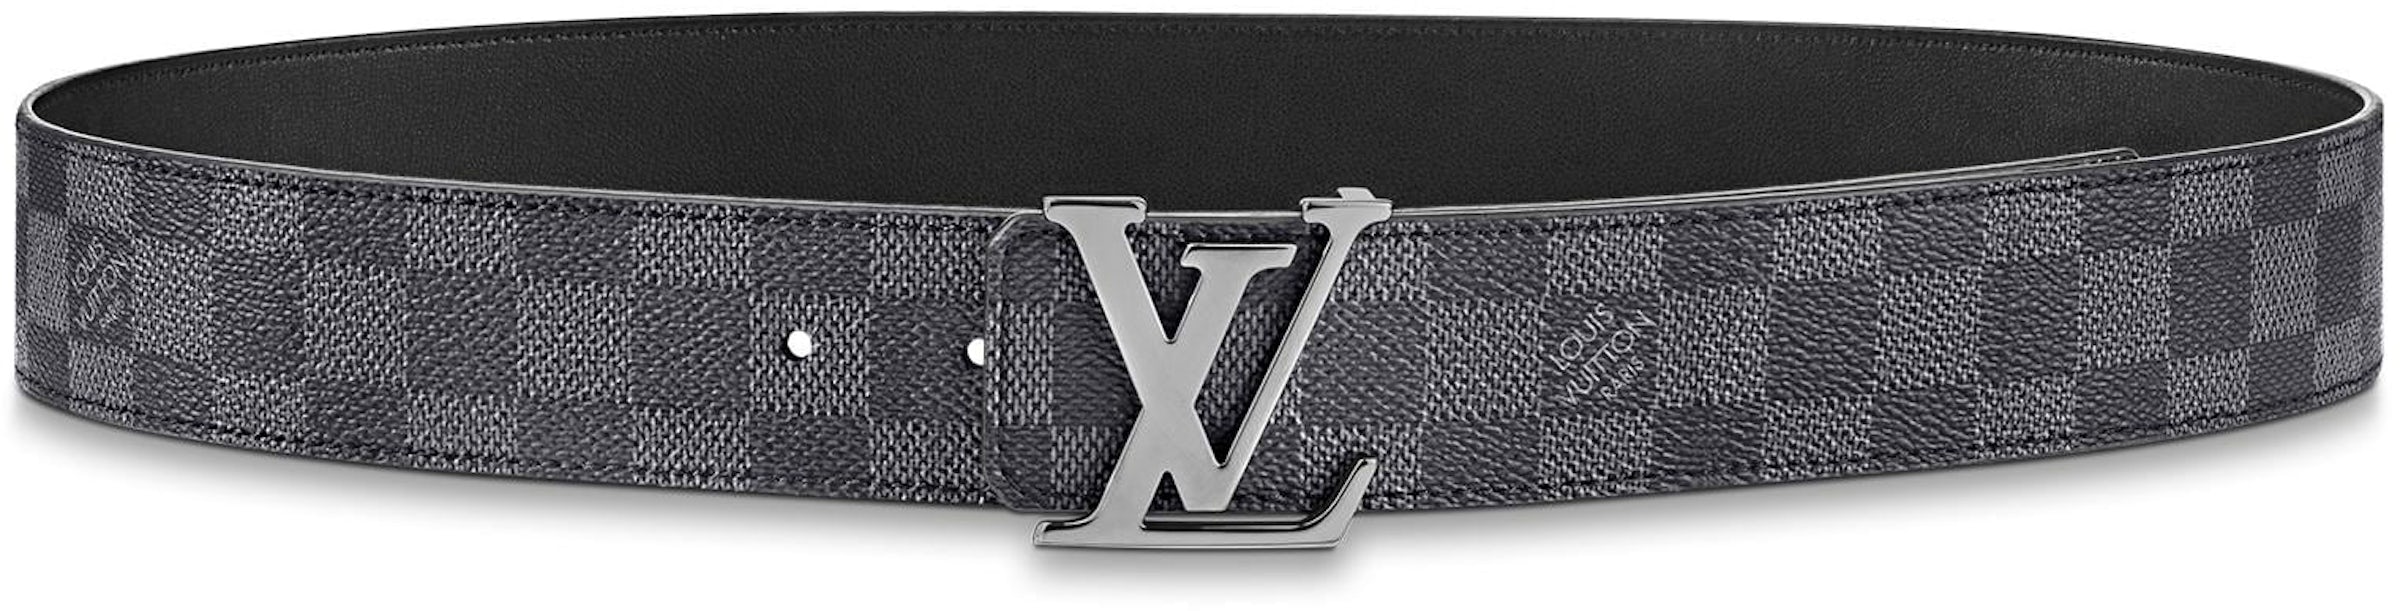 Authentic Louis Vuitton Damier Graphite Millionaire Zip Up Hoodie